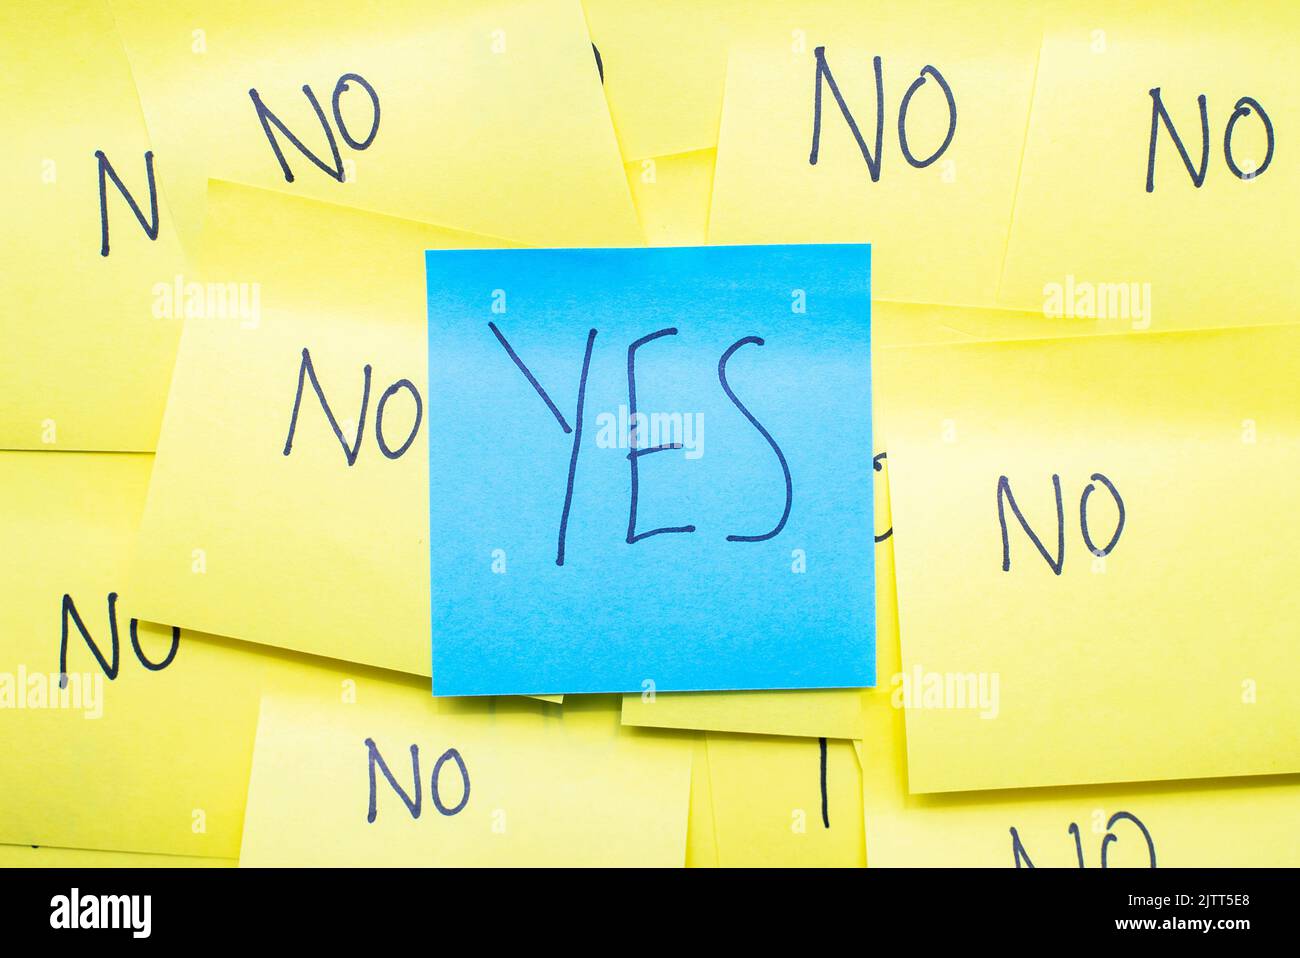 Immagine concettuale motivazionale e positività. La parola 'sì' è scritta a mano in una nota circondata da note di colore diverso con la parola 'NO' Foto Stock